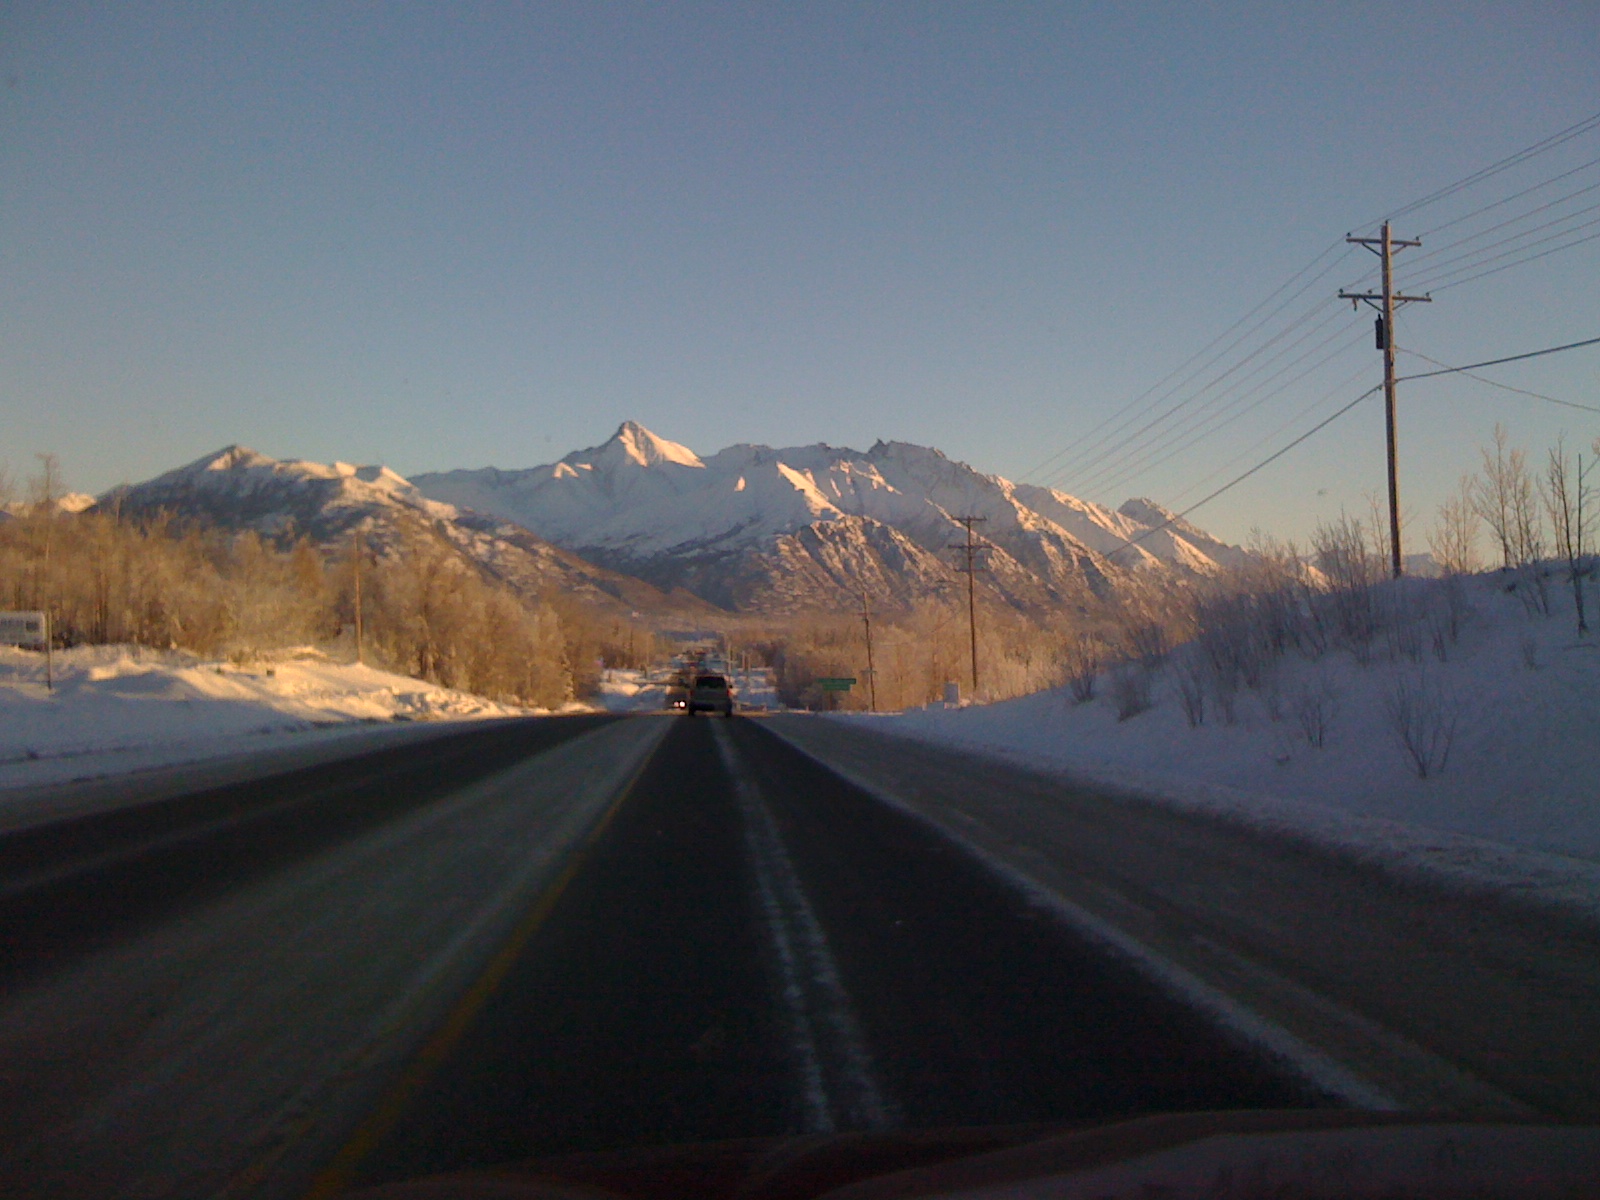 Palmer-Wasilla Highway, December, 2010.